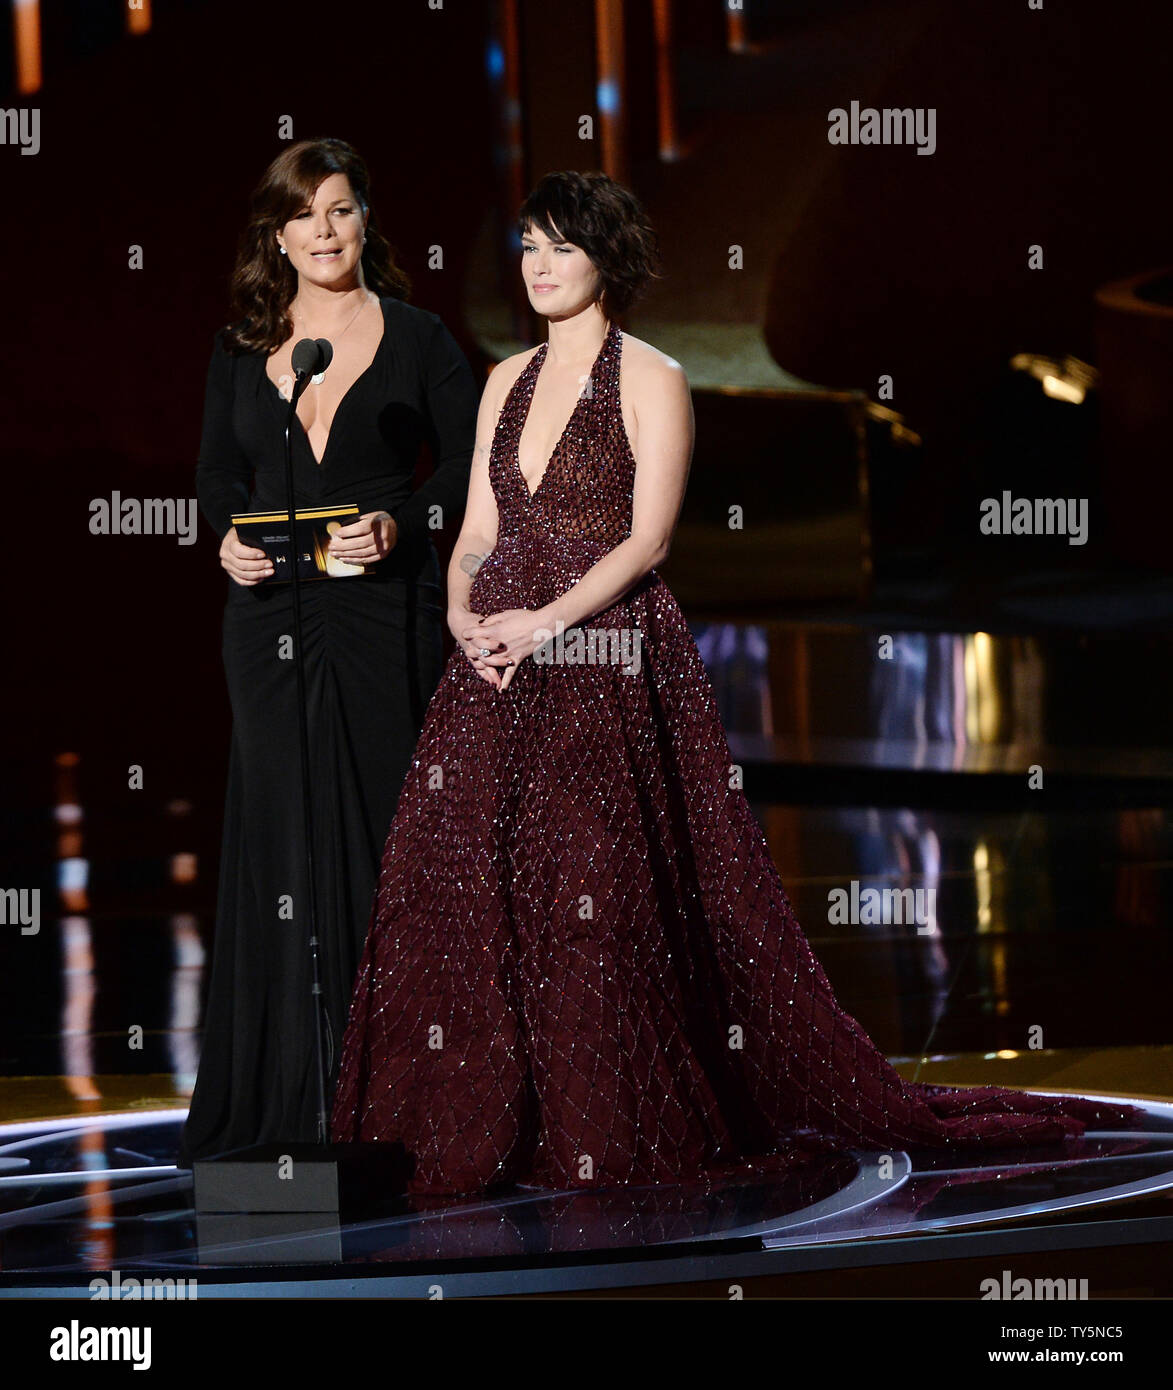 Schauspielerinnen Marica Gay Harden (L) und Lena Heady erscheinen auf der Bühne während der 67Th Primetime Emmy Awards in der Microsoft Theater in Los Angeles am 20. September 2015. Foto von Ken Matsui/UPI. Stockfoto